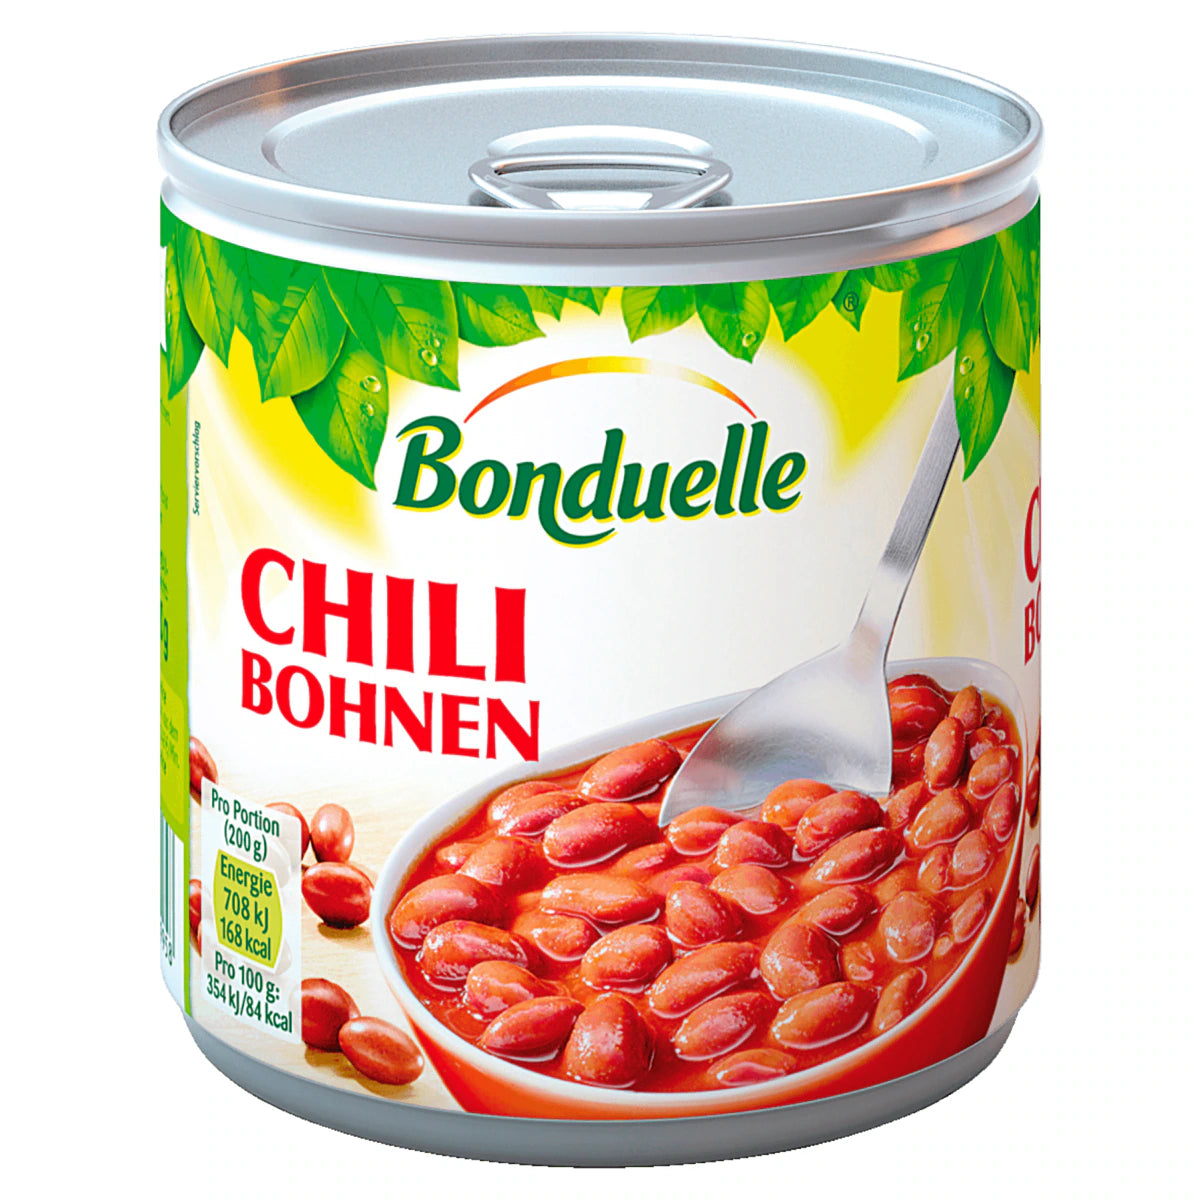 Bonduelle Chili Bohnen - 425 ml